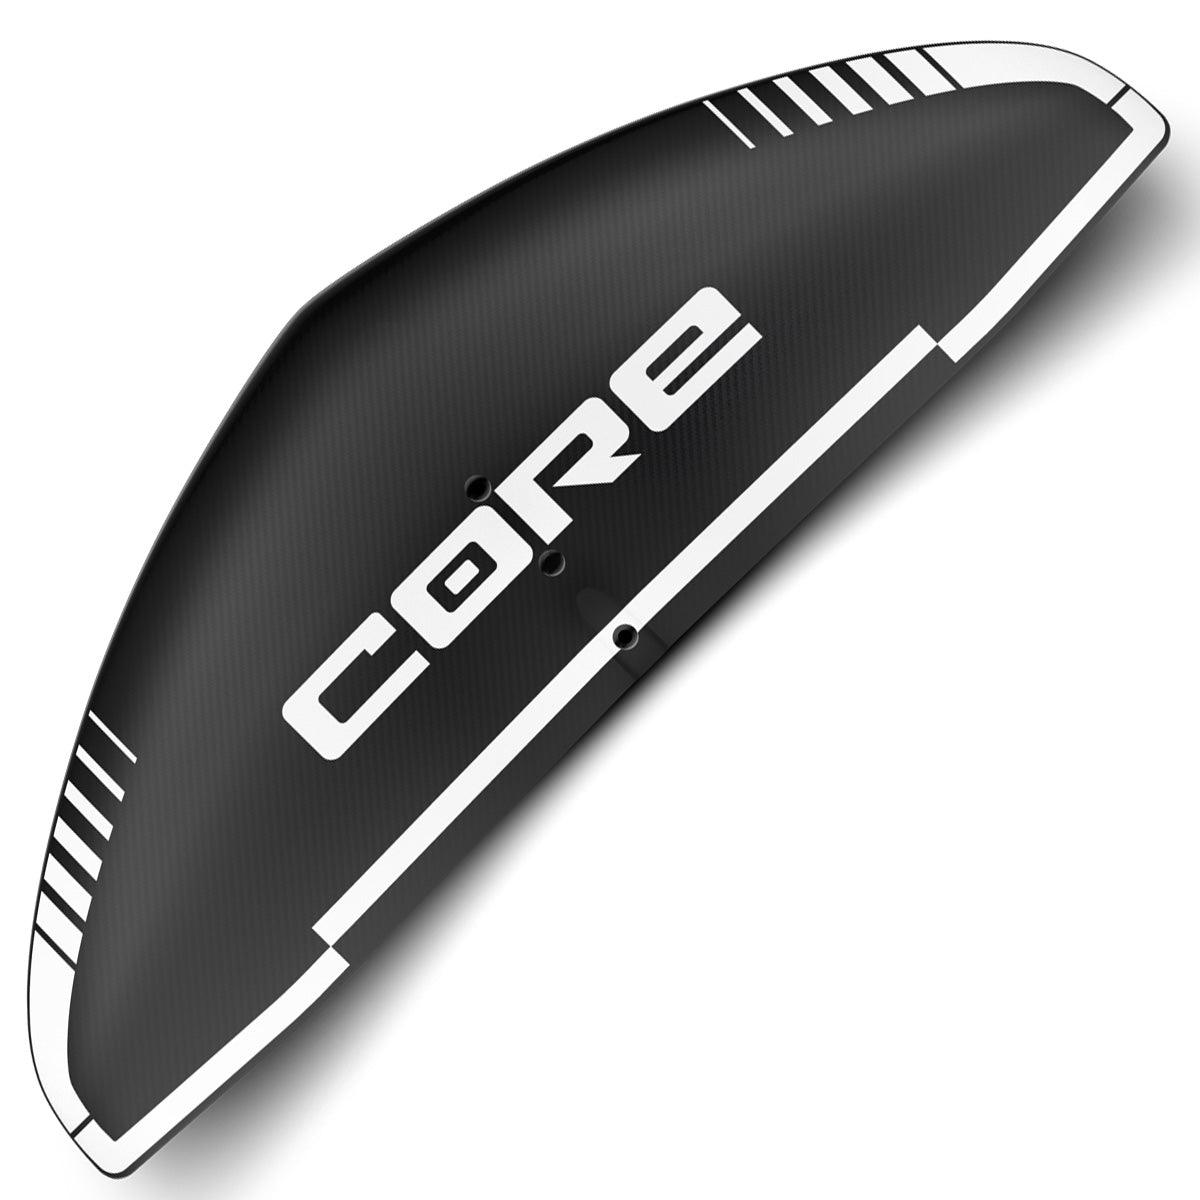 Core SLC Foil - Kiteshop.com